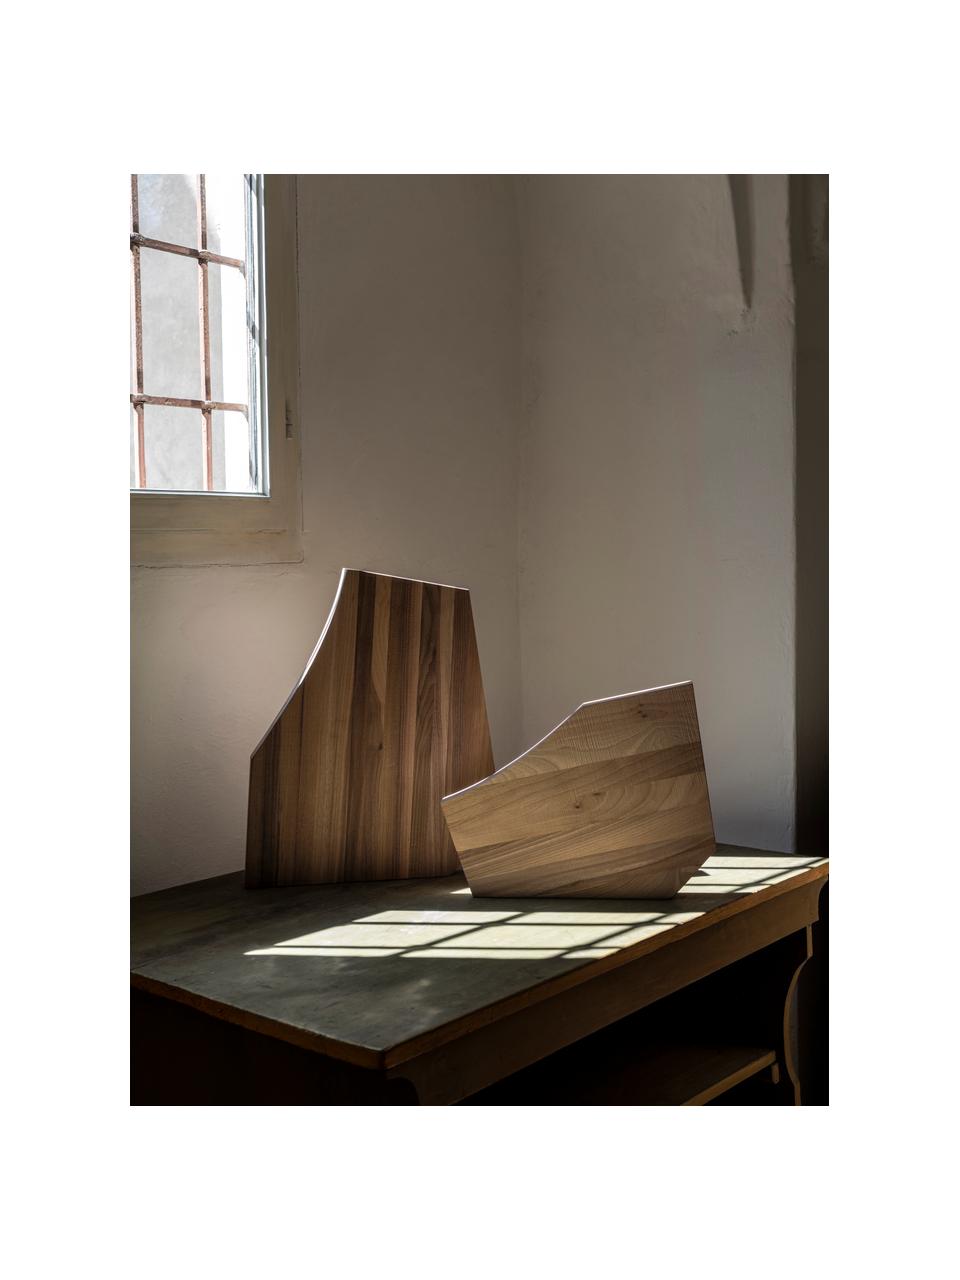 Planche à découper en bois de frêne Sculpture, Bois clair, Bois de frêne, larg. 50 x prof. 40 cm